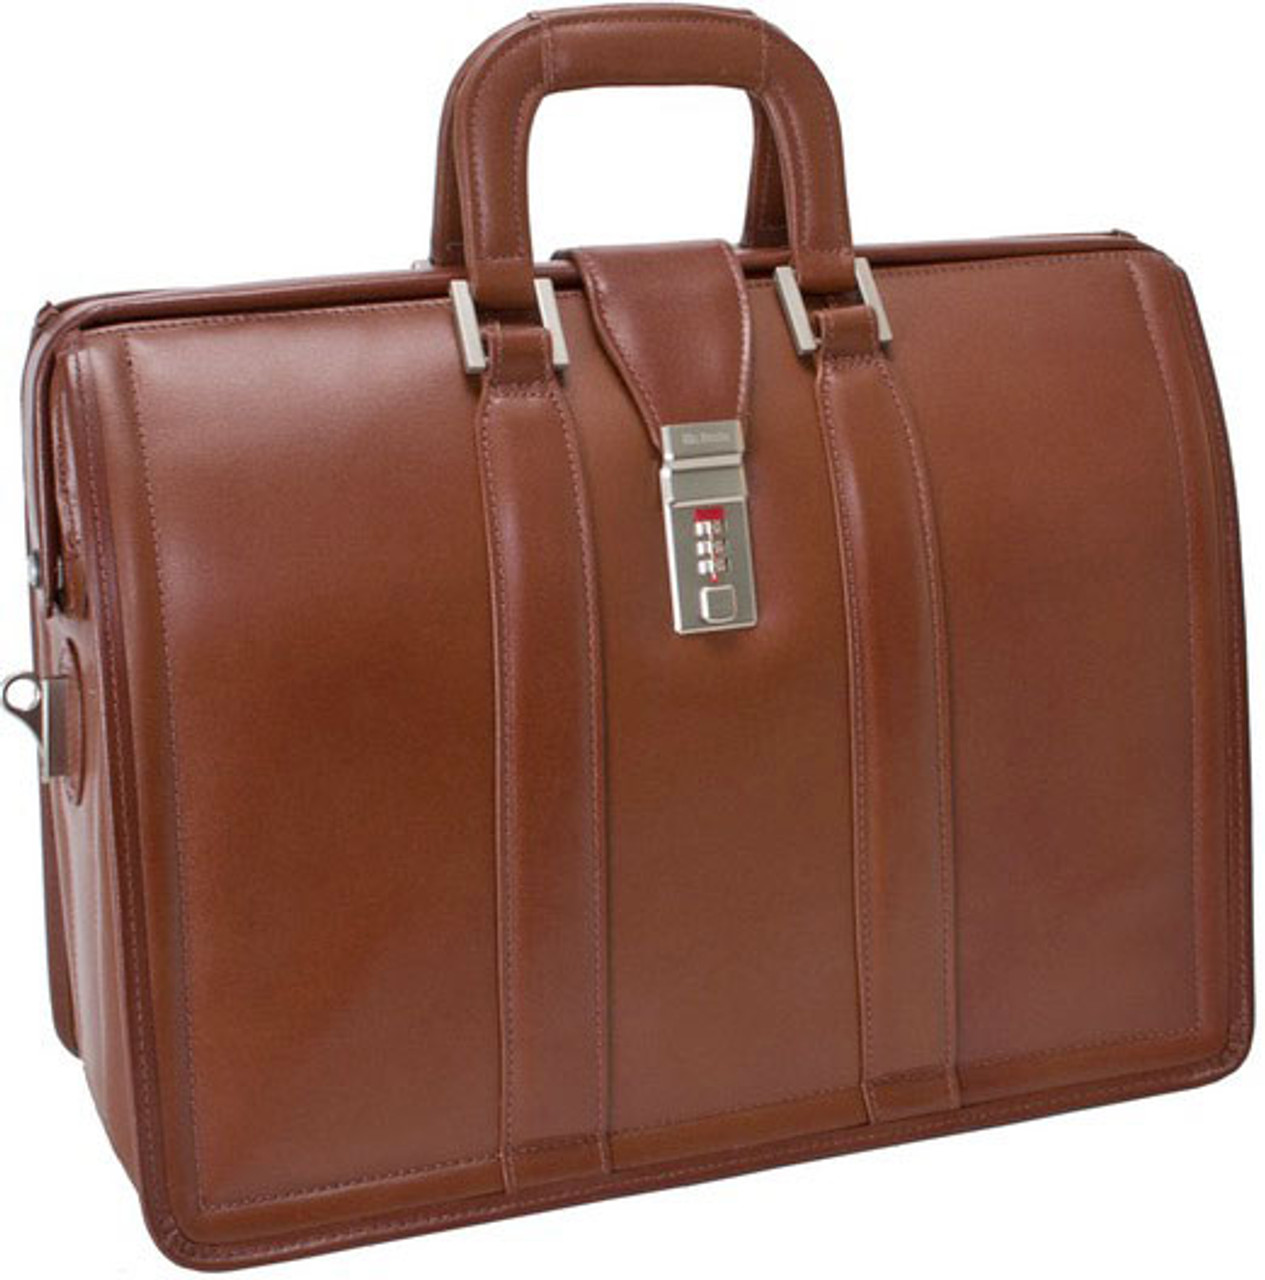 Functional Joliet 15” Leather Laptop Briefcase - McKlein – McKleinUSA